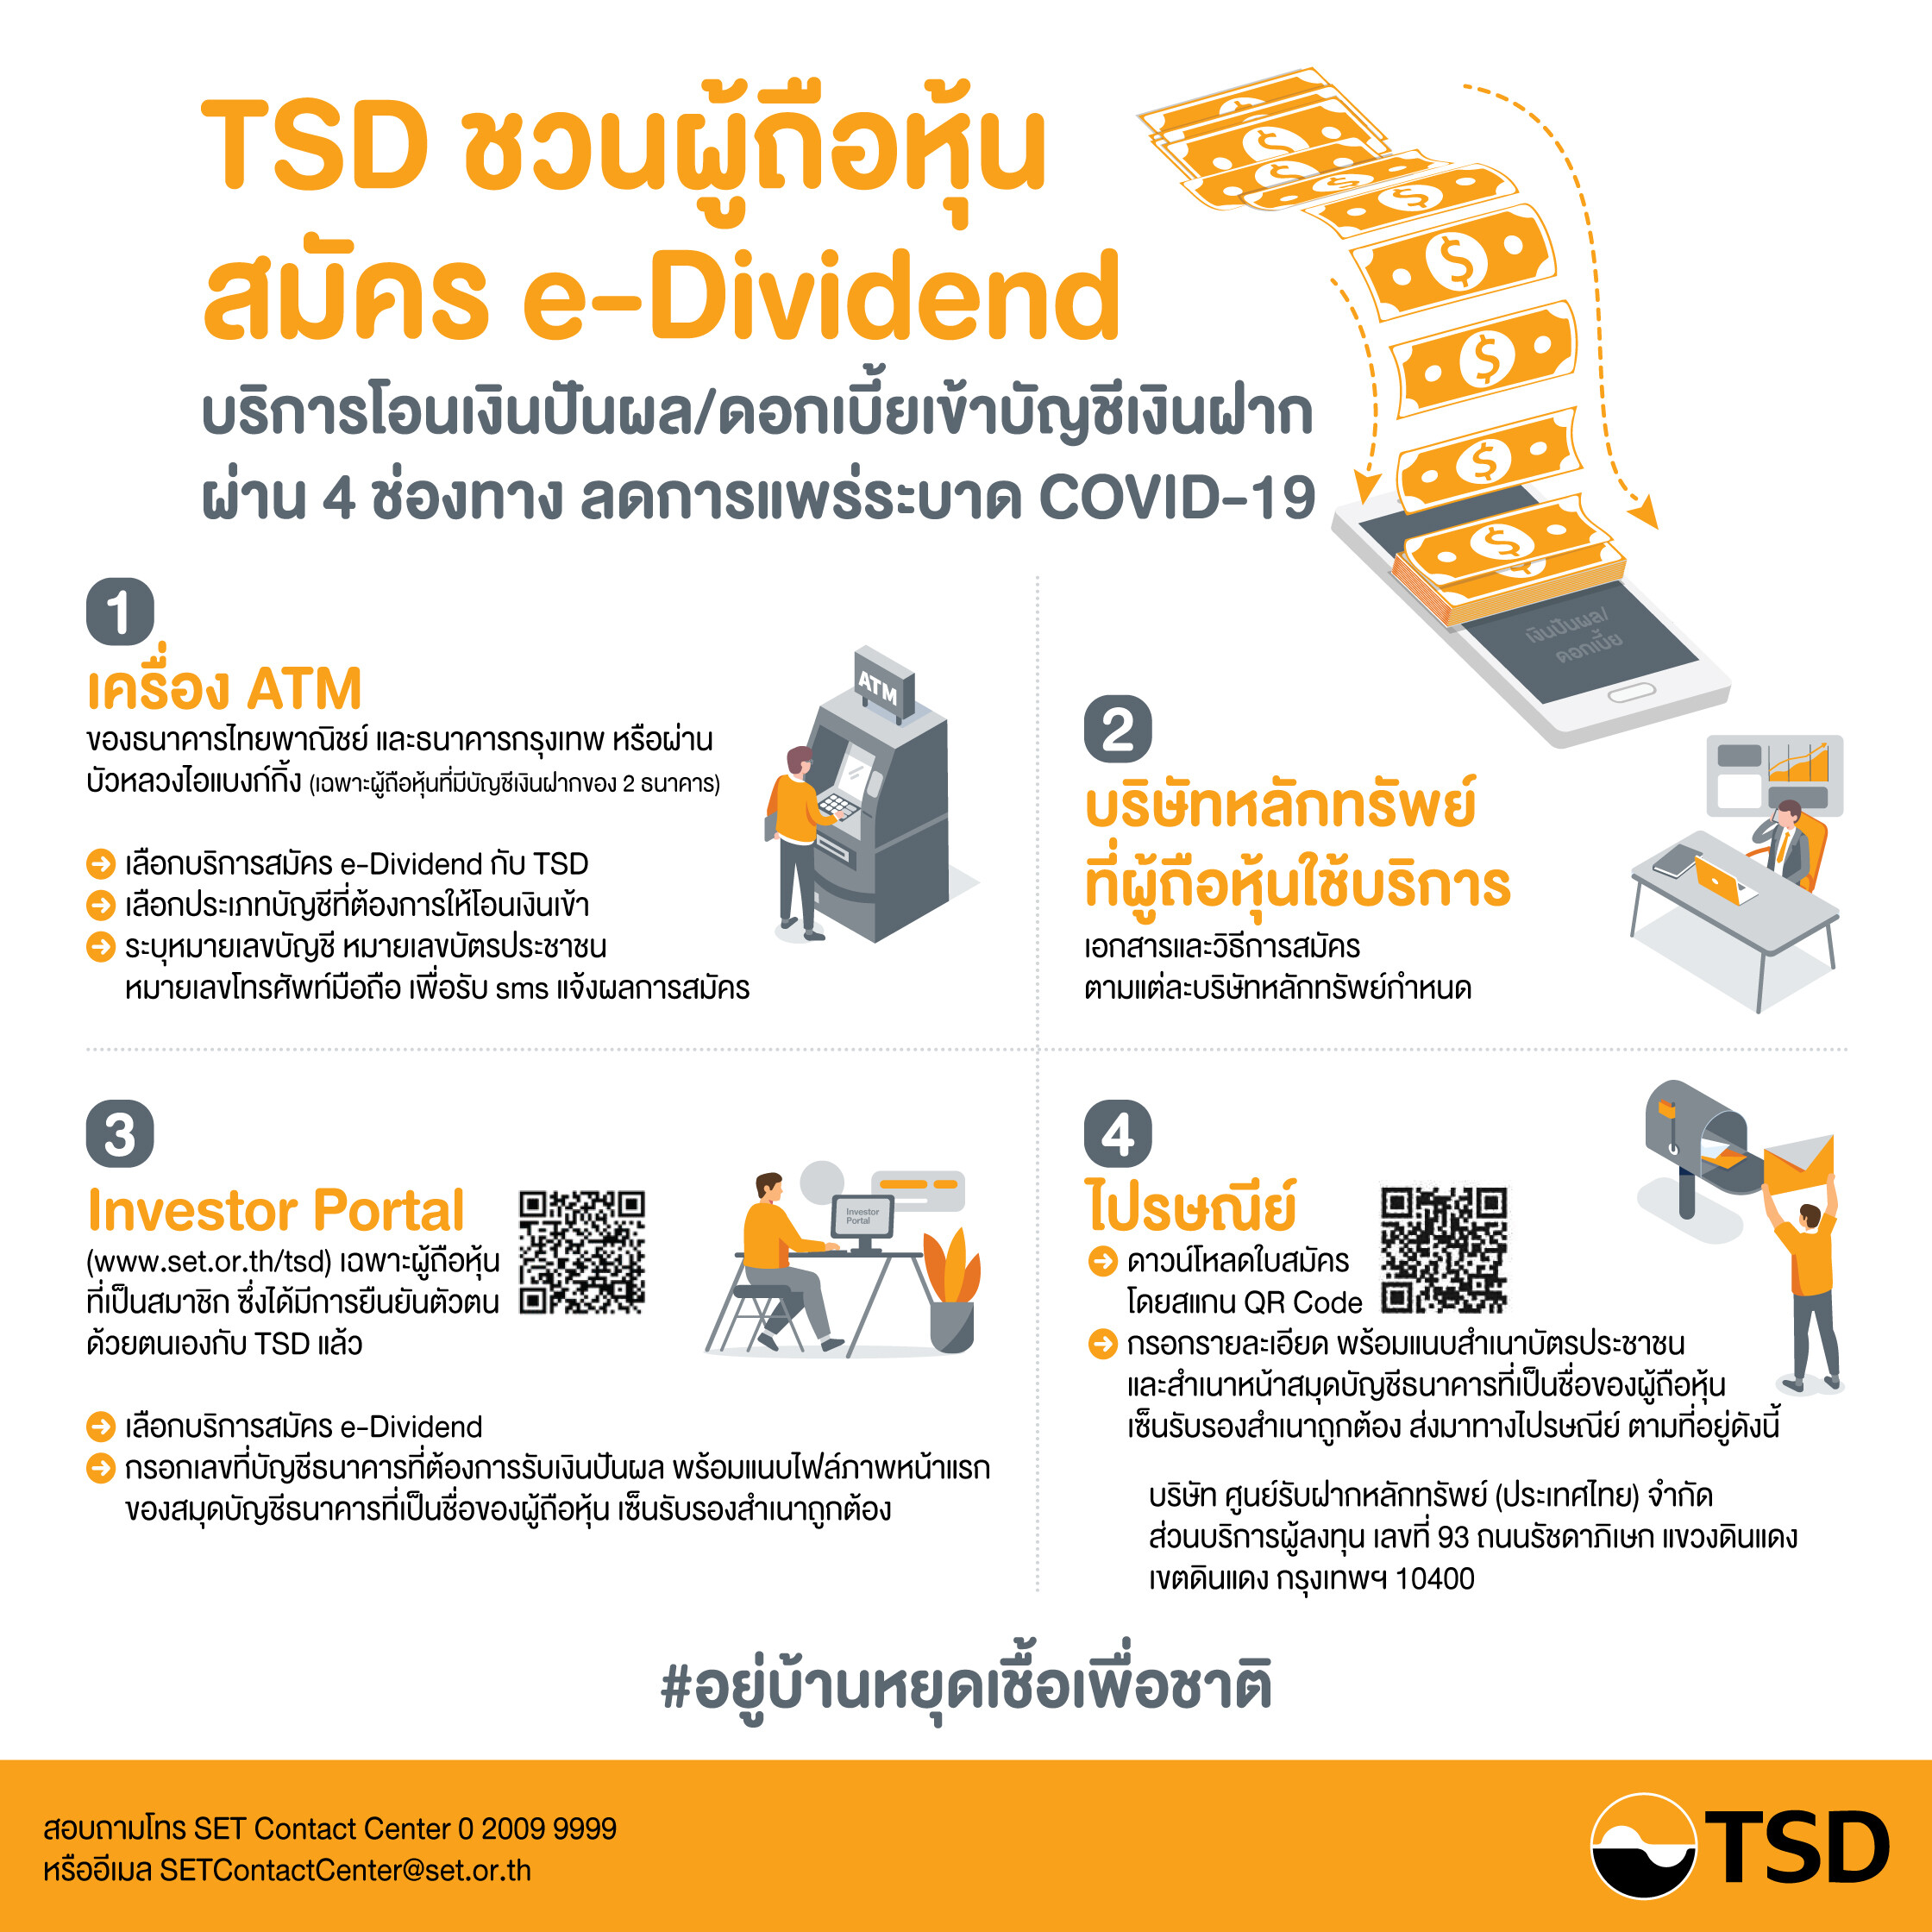 ลาดหลักทรัพย์แห่งประเทศไทย ขอนำส่งข่าวสั้น “TSDเชิญชวนผู้ถือหุ้นสมัครใช้บริการ e-Dividendผ่านออนไลน์ ลดการแพร่ระบาดโรคCOVID-19”